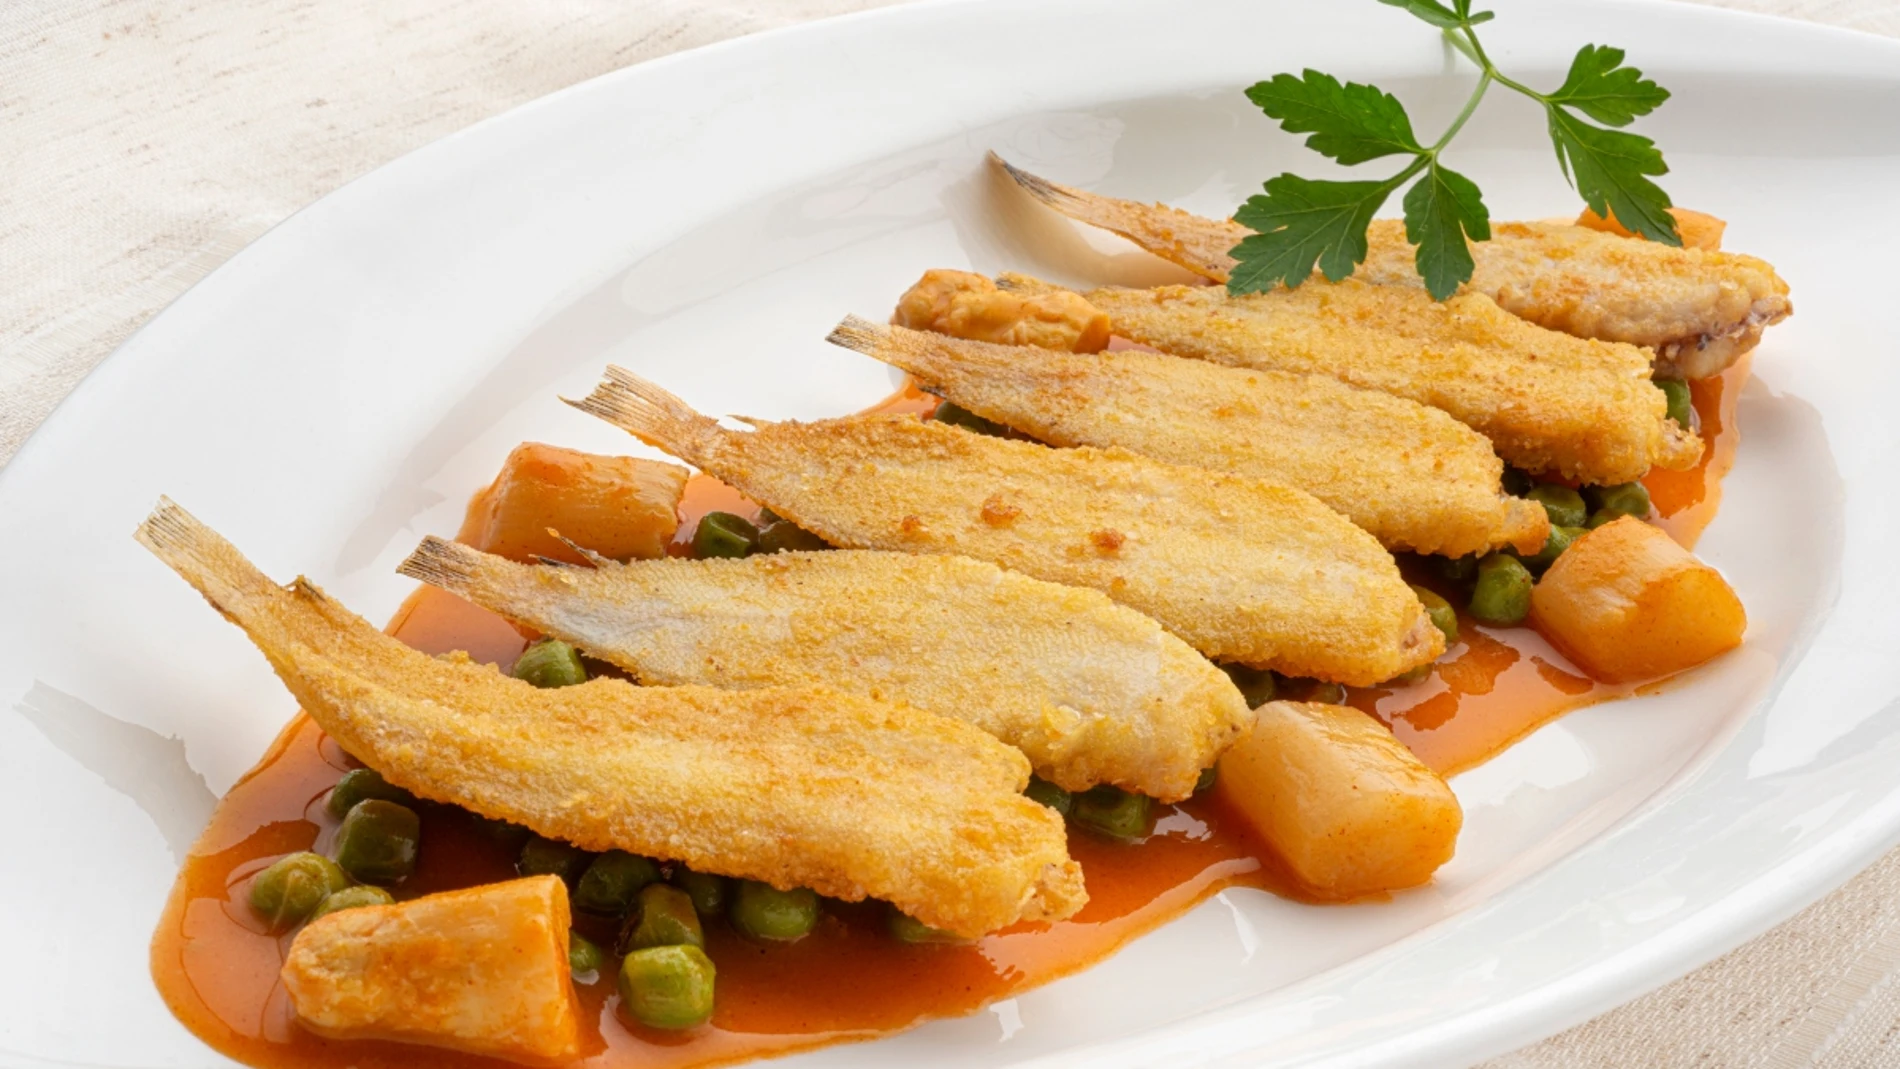 Receta de Arguiñano perfecta para niños: soldaditos con salsa de guisantes y espárragos